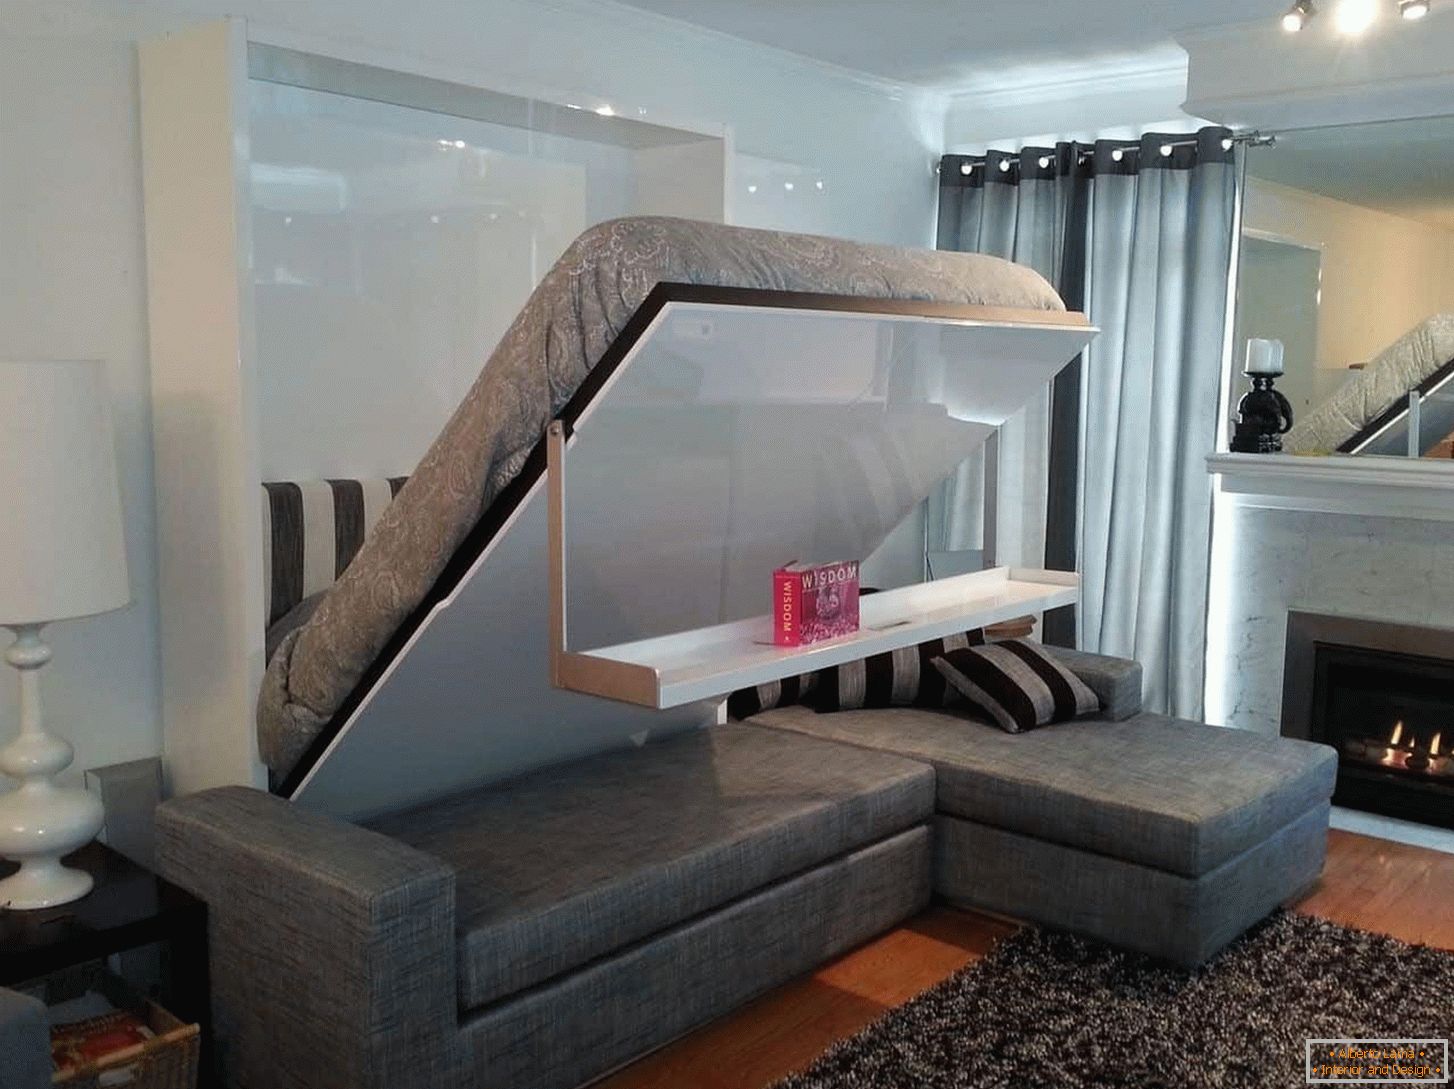 Диван-ліжко, зручний трансформер для суміщеної вітальні та спальні